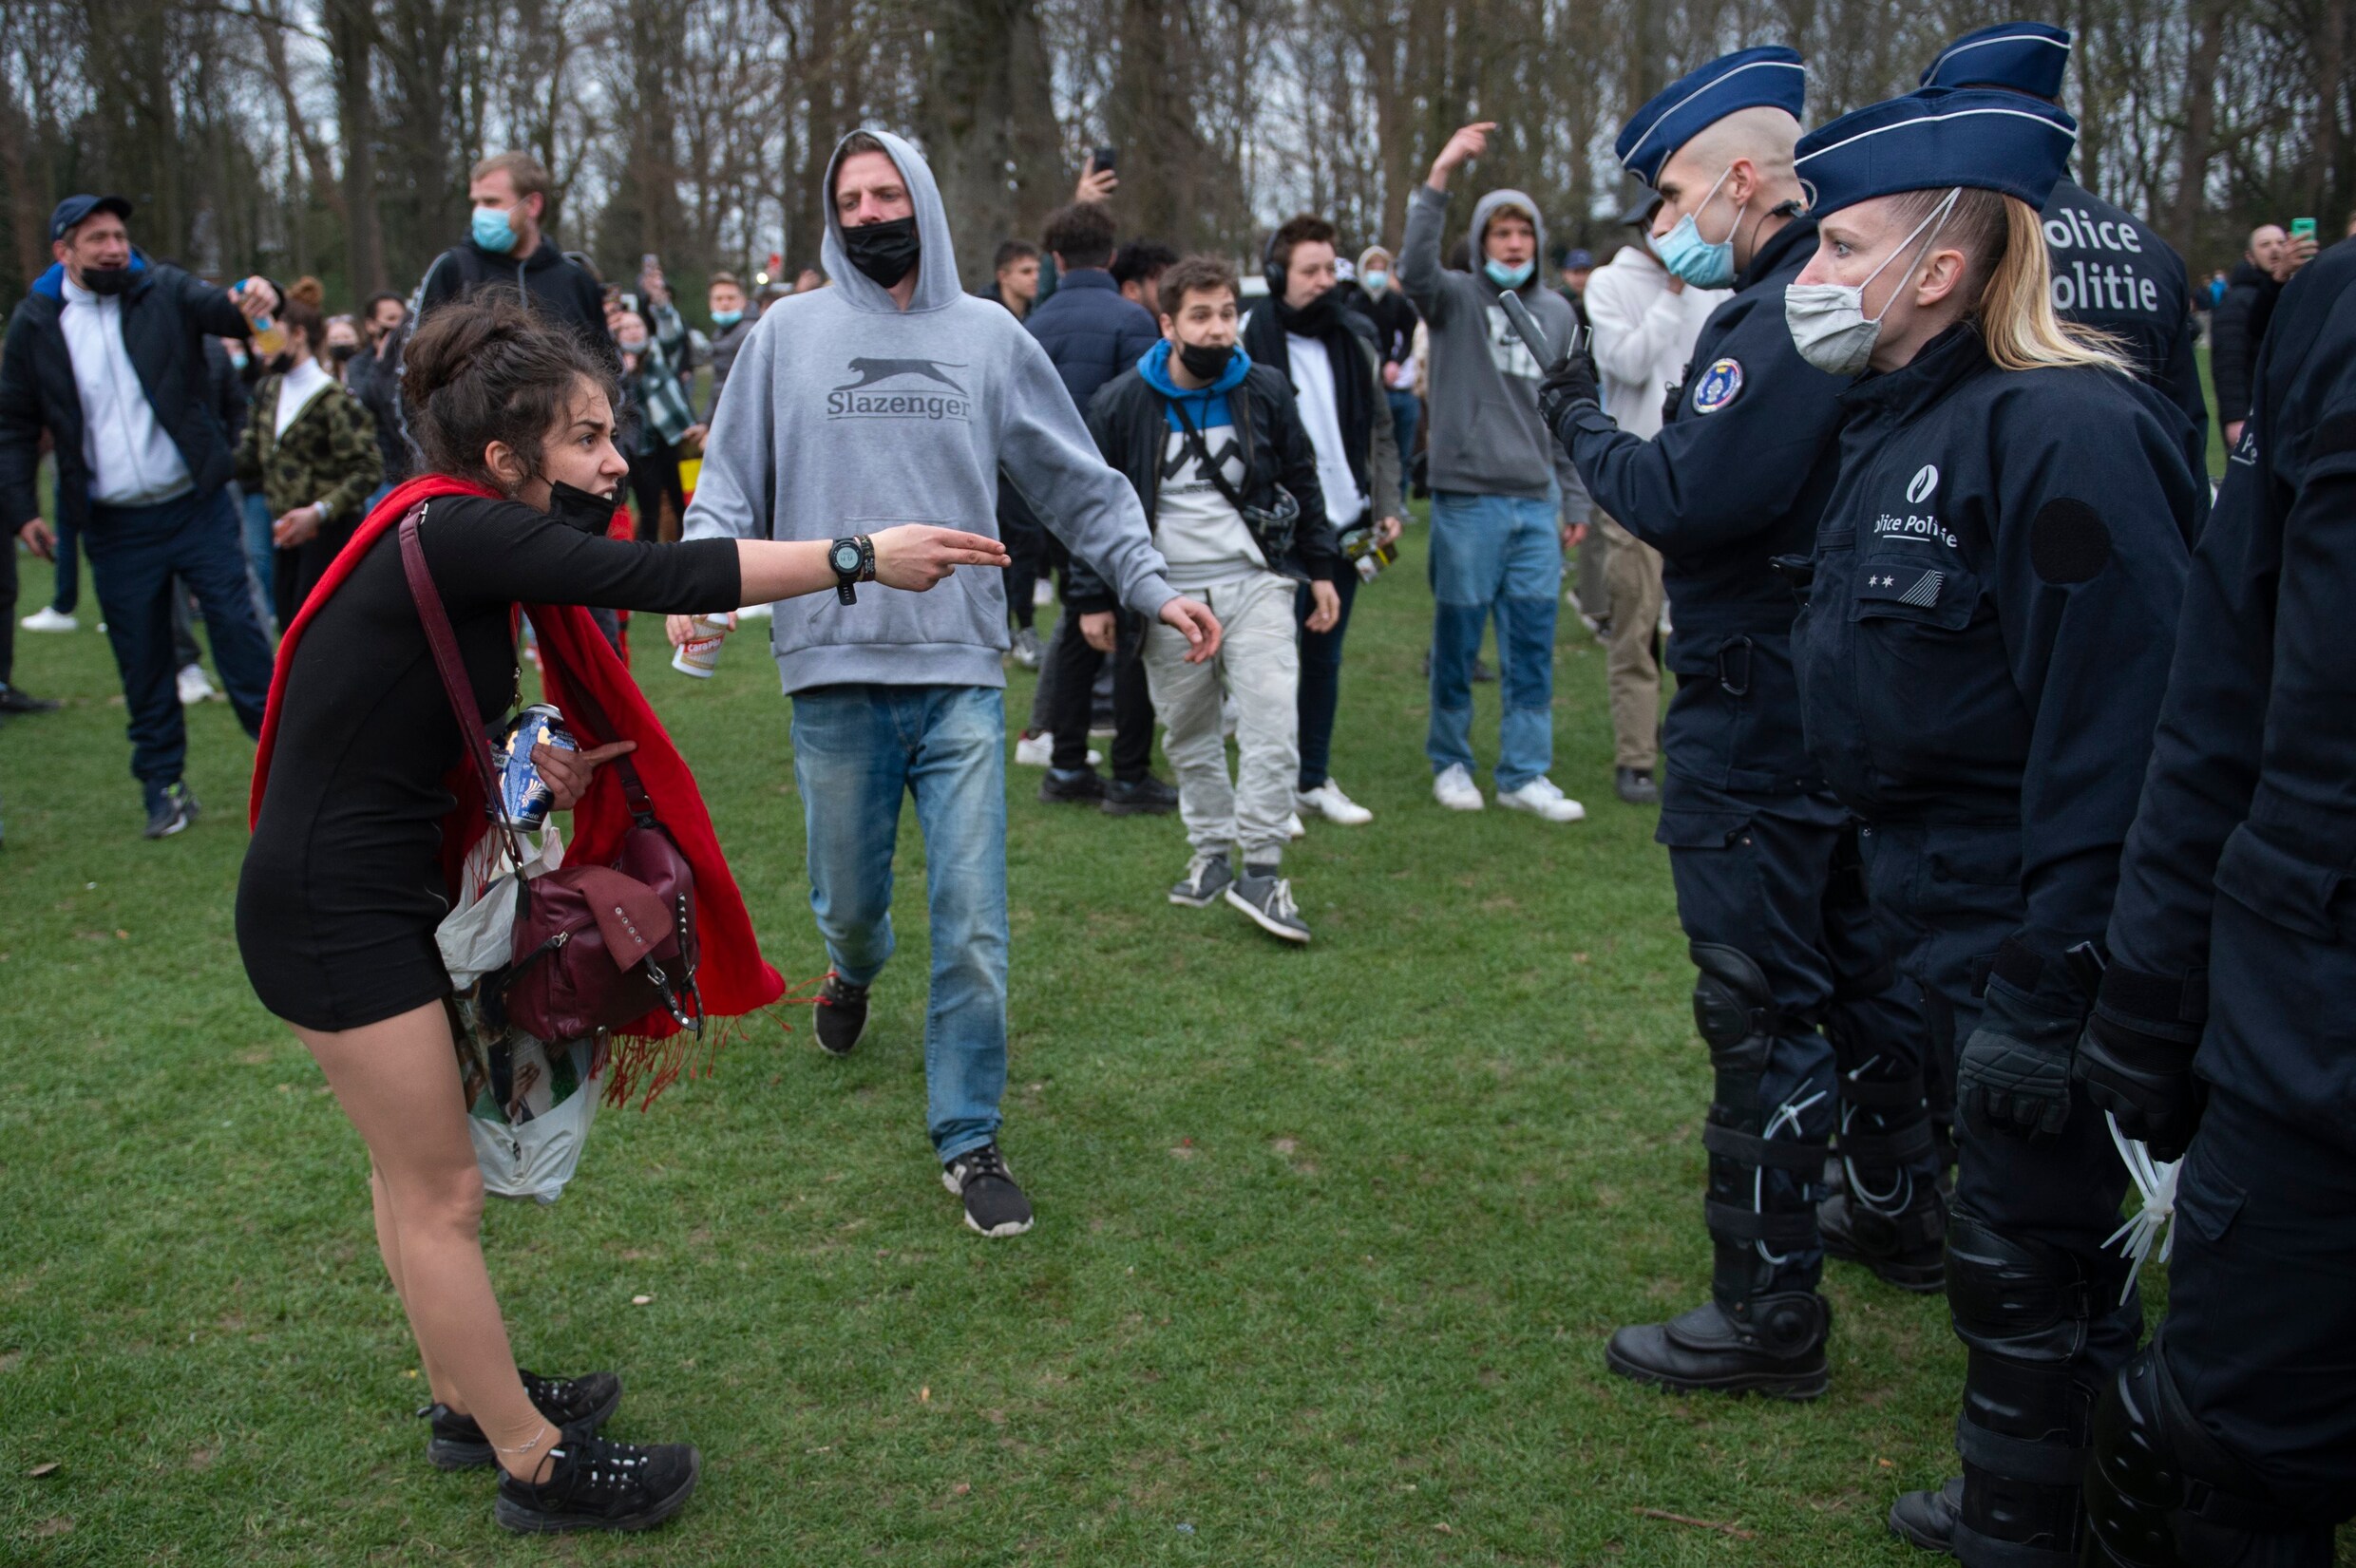 Weer feest in Ter Kamerenbos: politie zet waterkanon in en verricht arrestaties